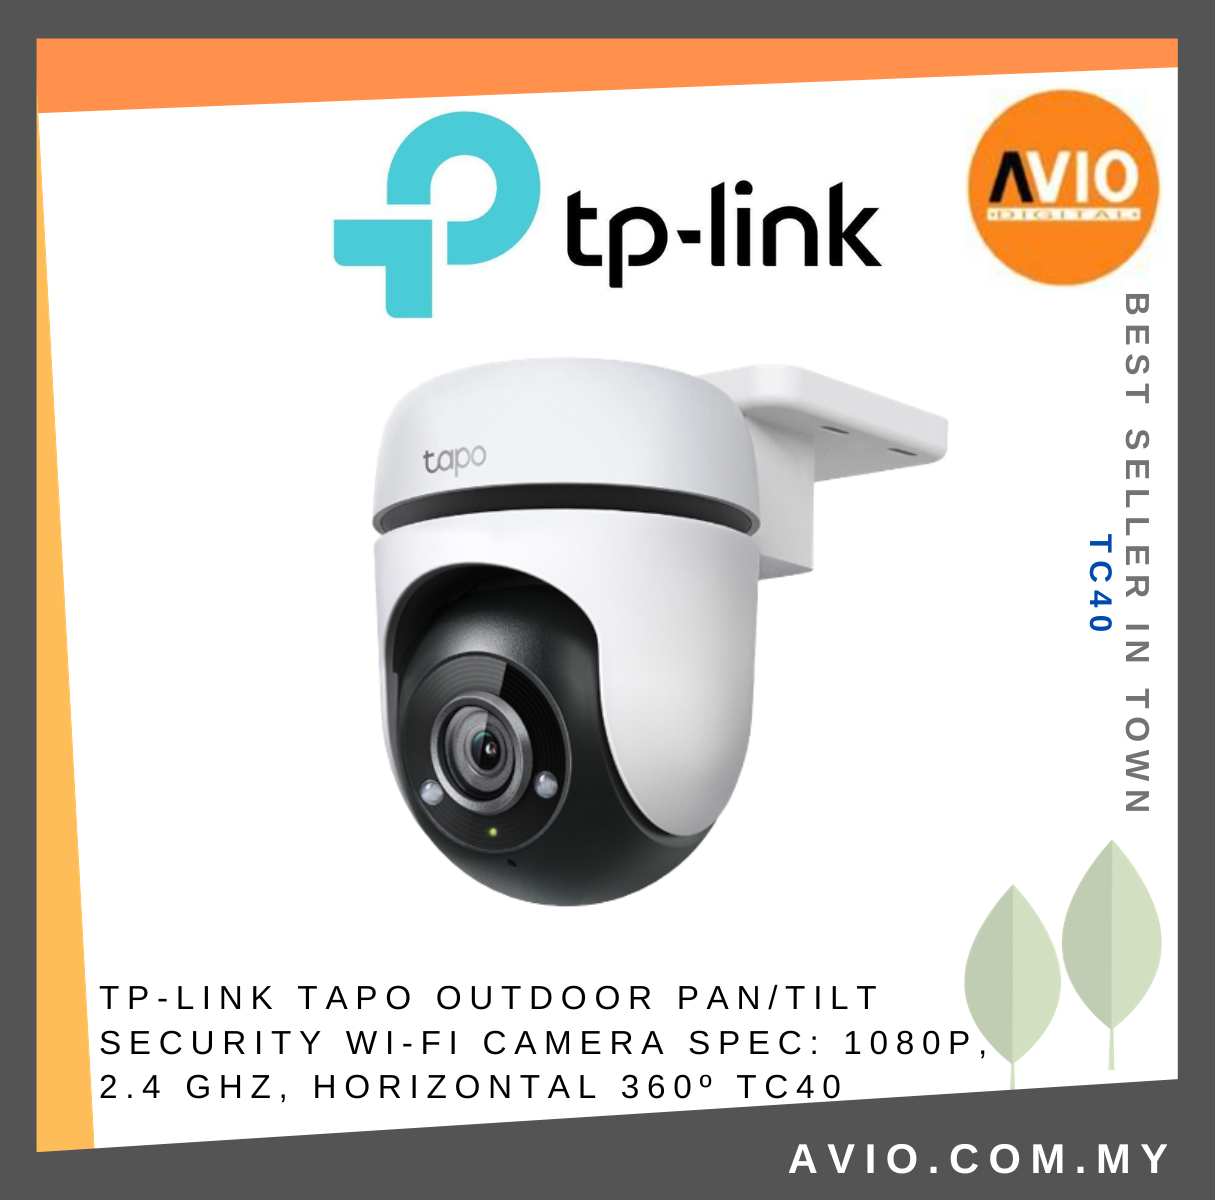 TP-Link Outdoor Pan/Tilt Security WiFi Camera